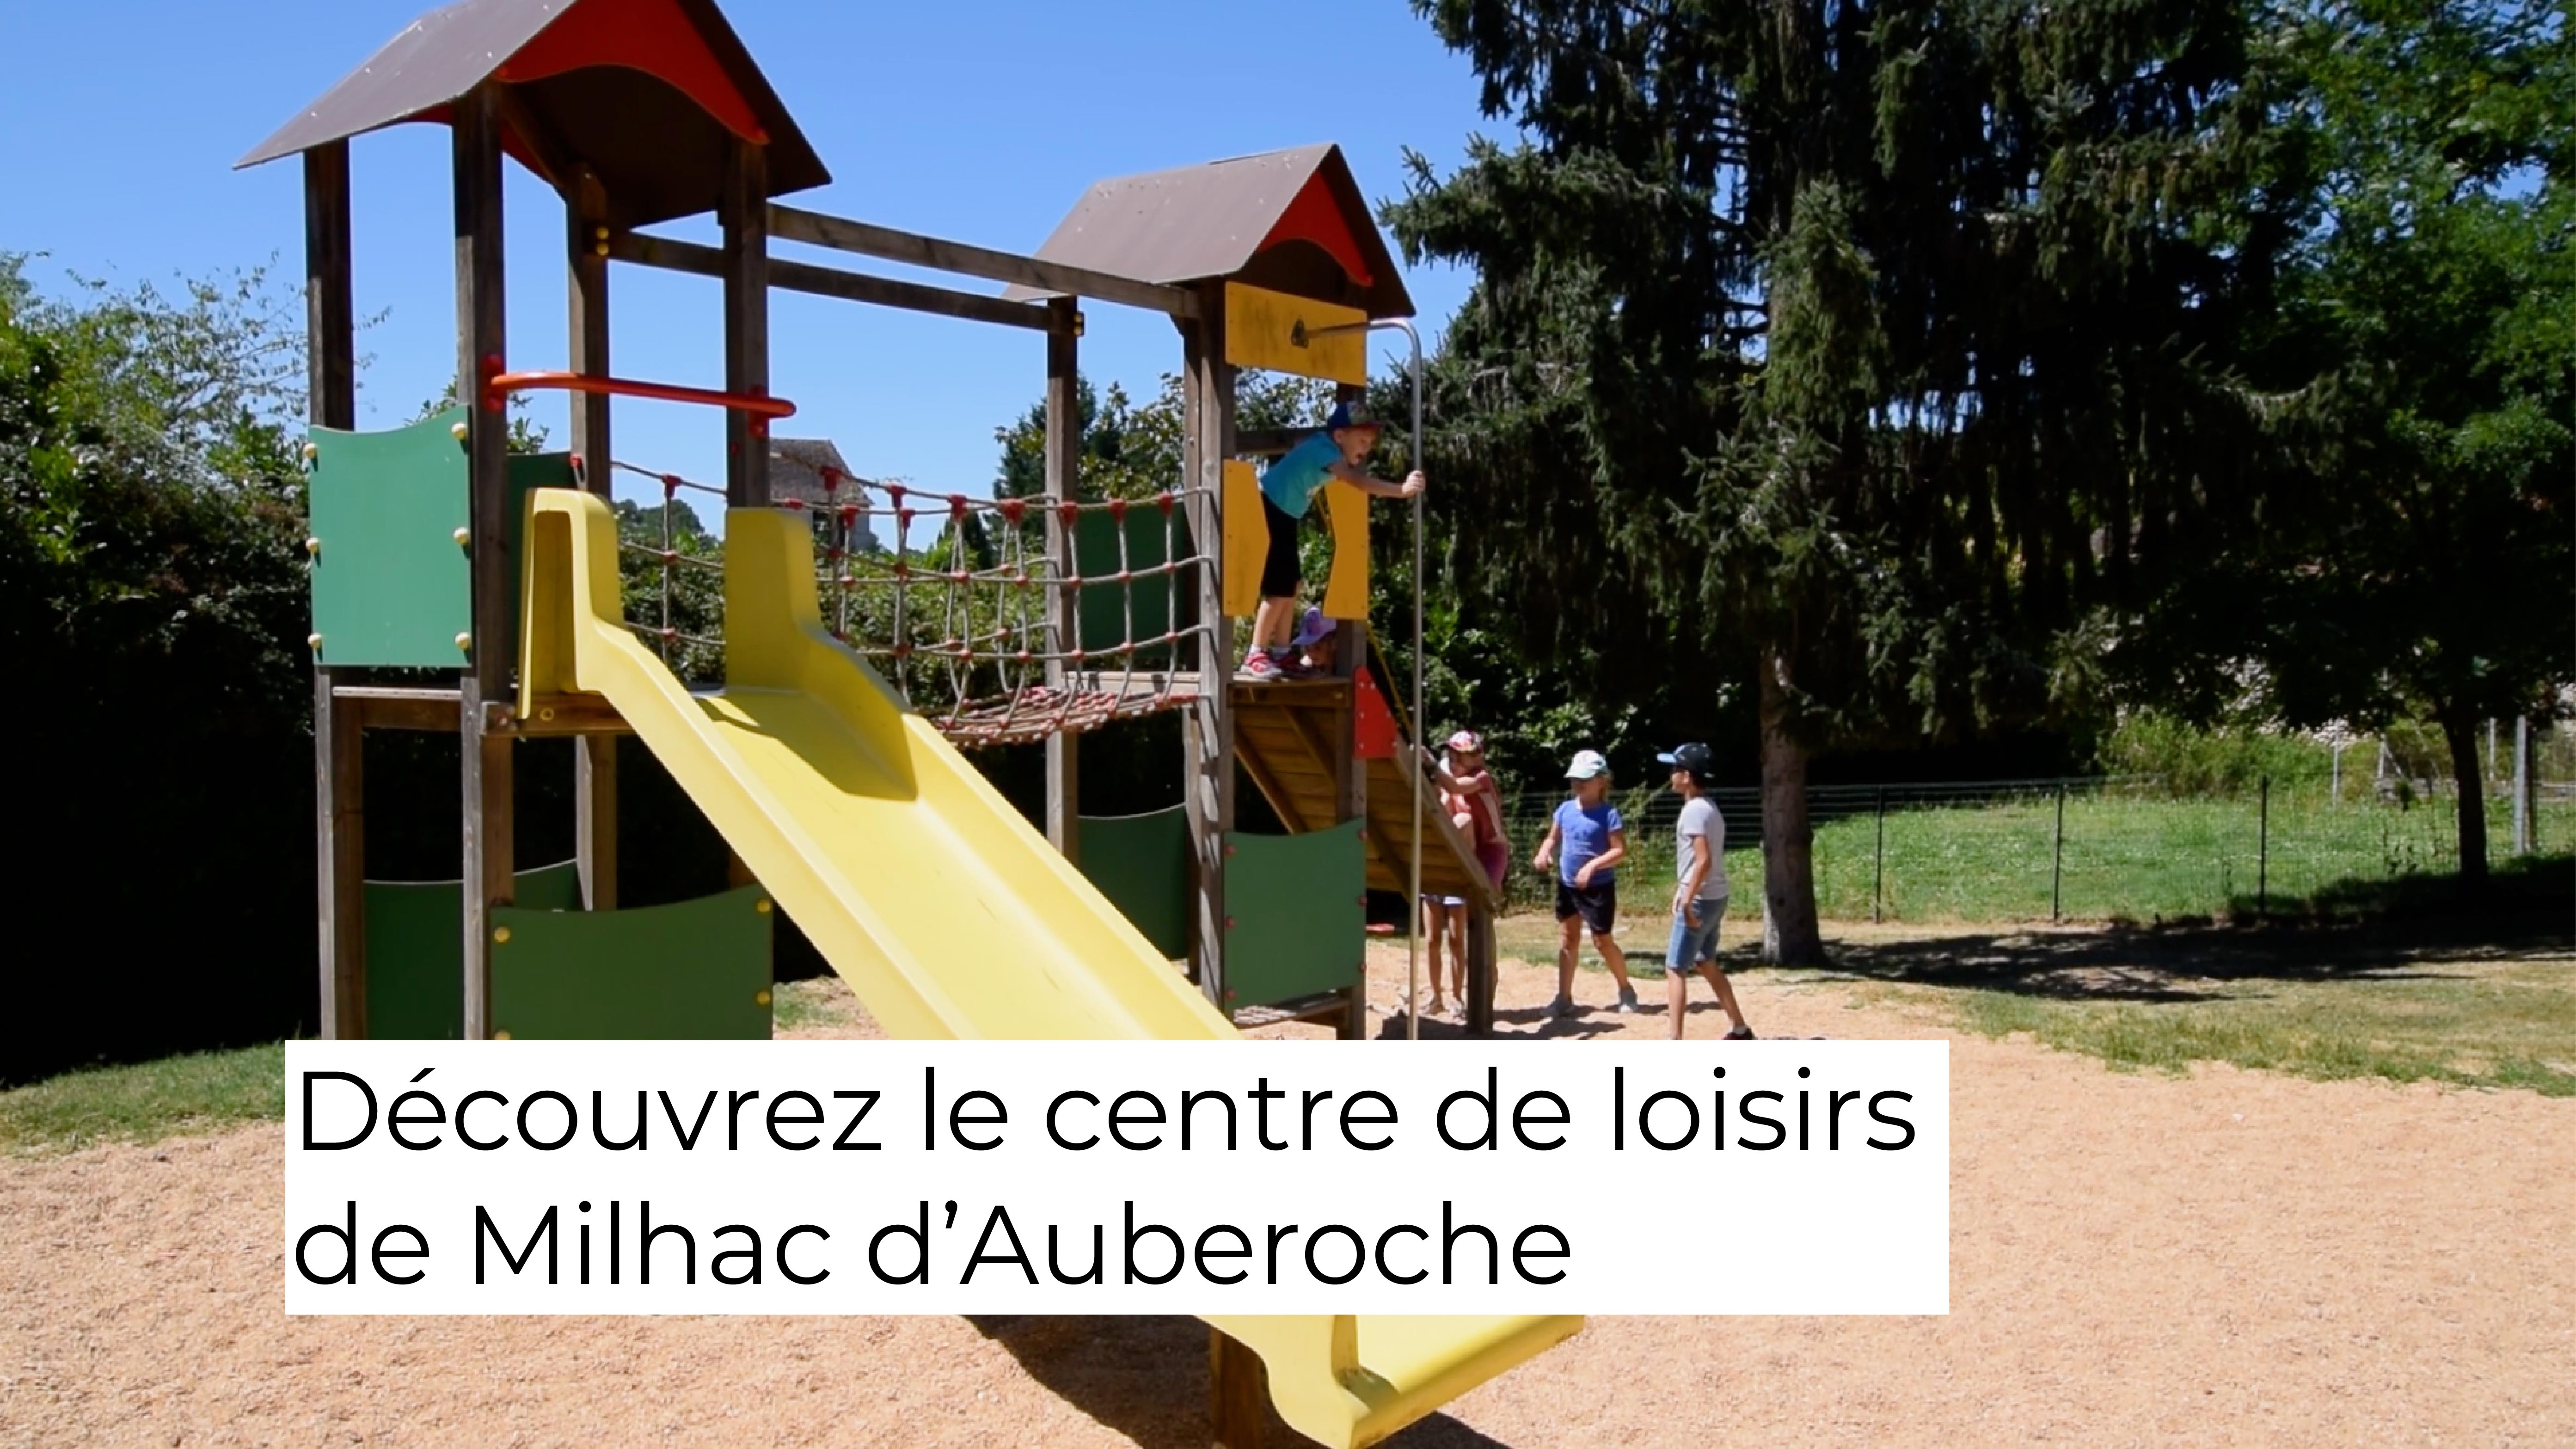 Découvrez le Centre de loisirs de Milhac d’Auberoche